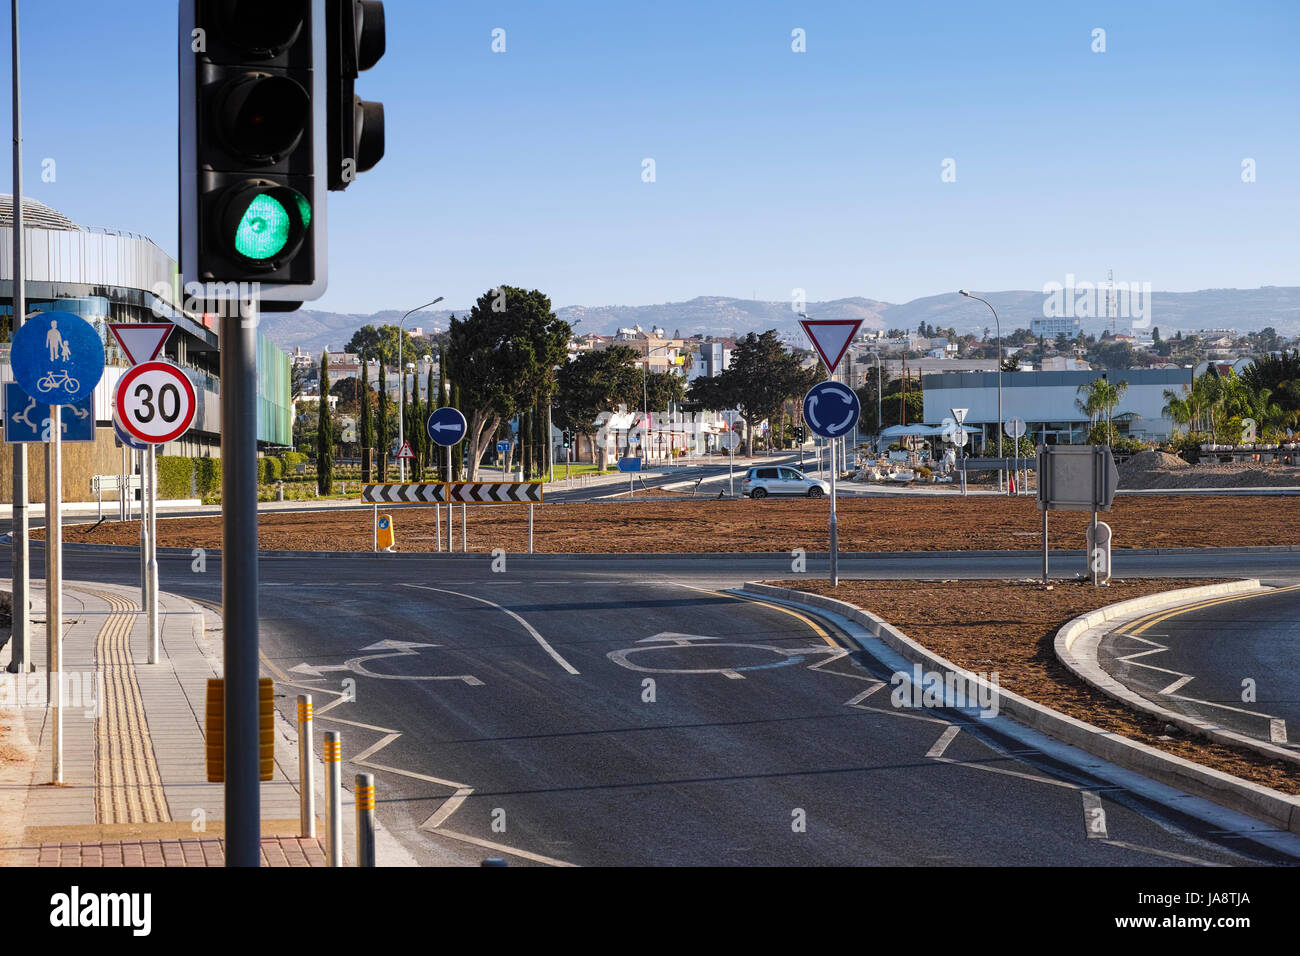 Rotonda con indicazioni stradali, semaforici e di segnaletica stradale. Scena urbana. Foto Stock